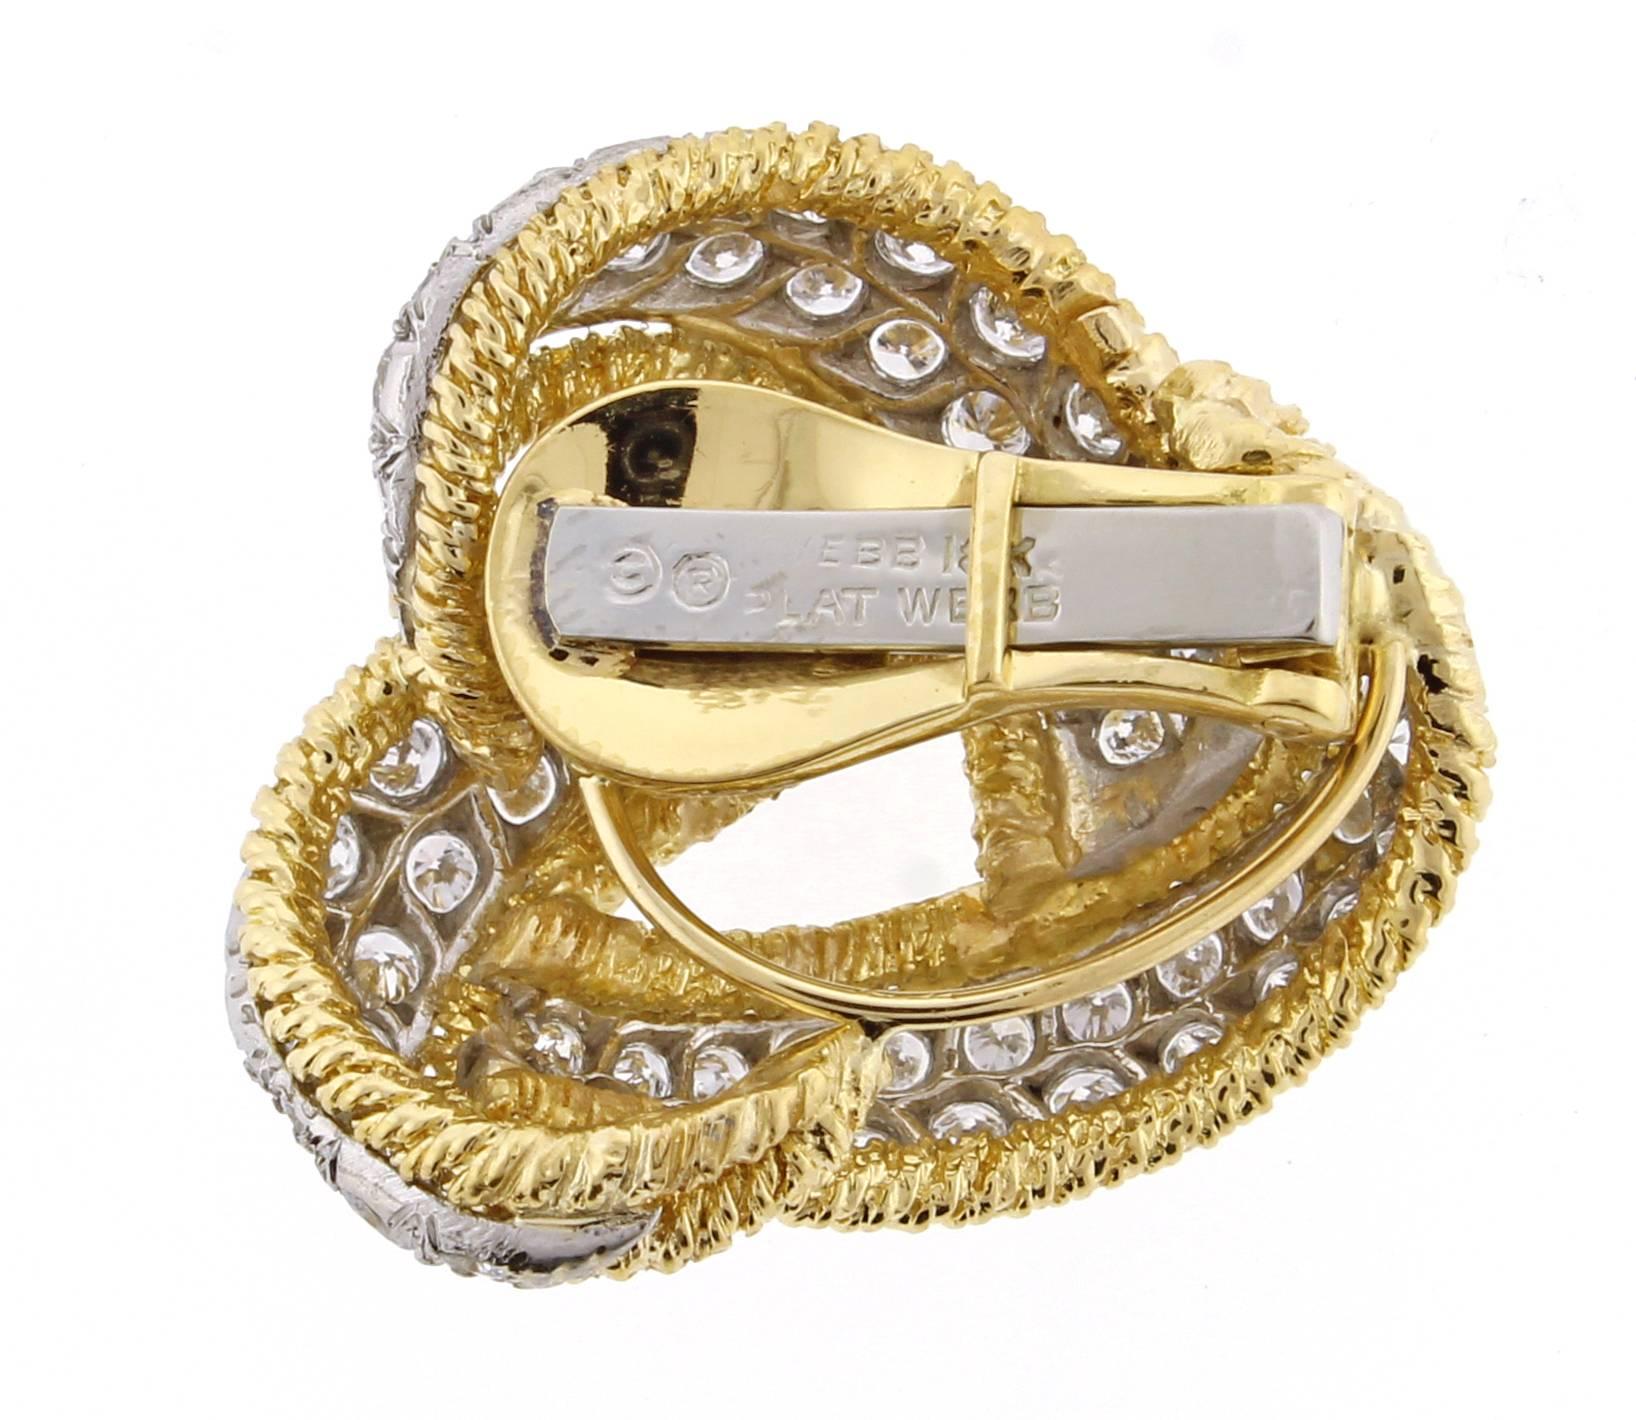 Absolut atemberaubende Diamant- und Goldknoten-Ohrringe von David Webb. Der Ohrring besteht aus 134 schimmernden runden Diamanten mit einem Gewicht von ca. 5 Karat, die in Platin gefasst und von einem Seil aus 18-karätigem Gold umrahmt sind.  Ein